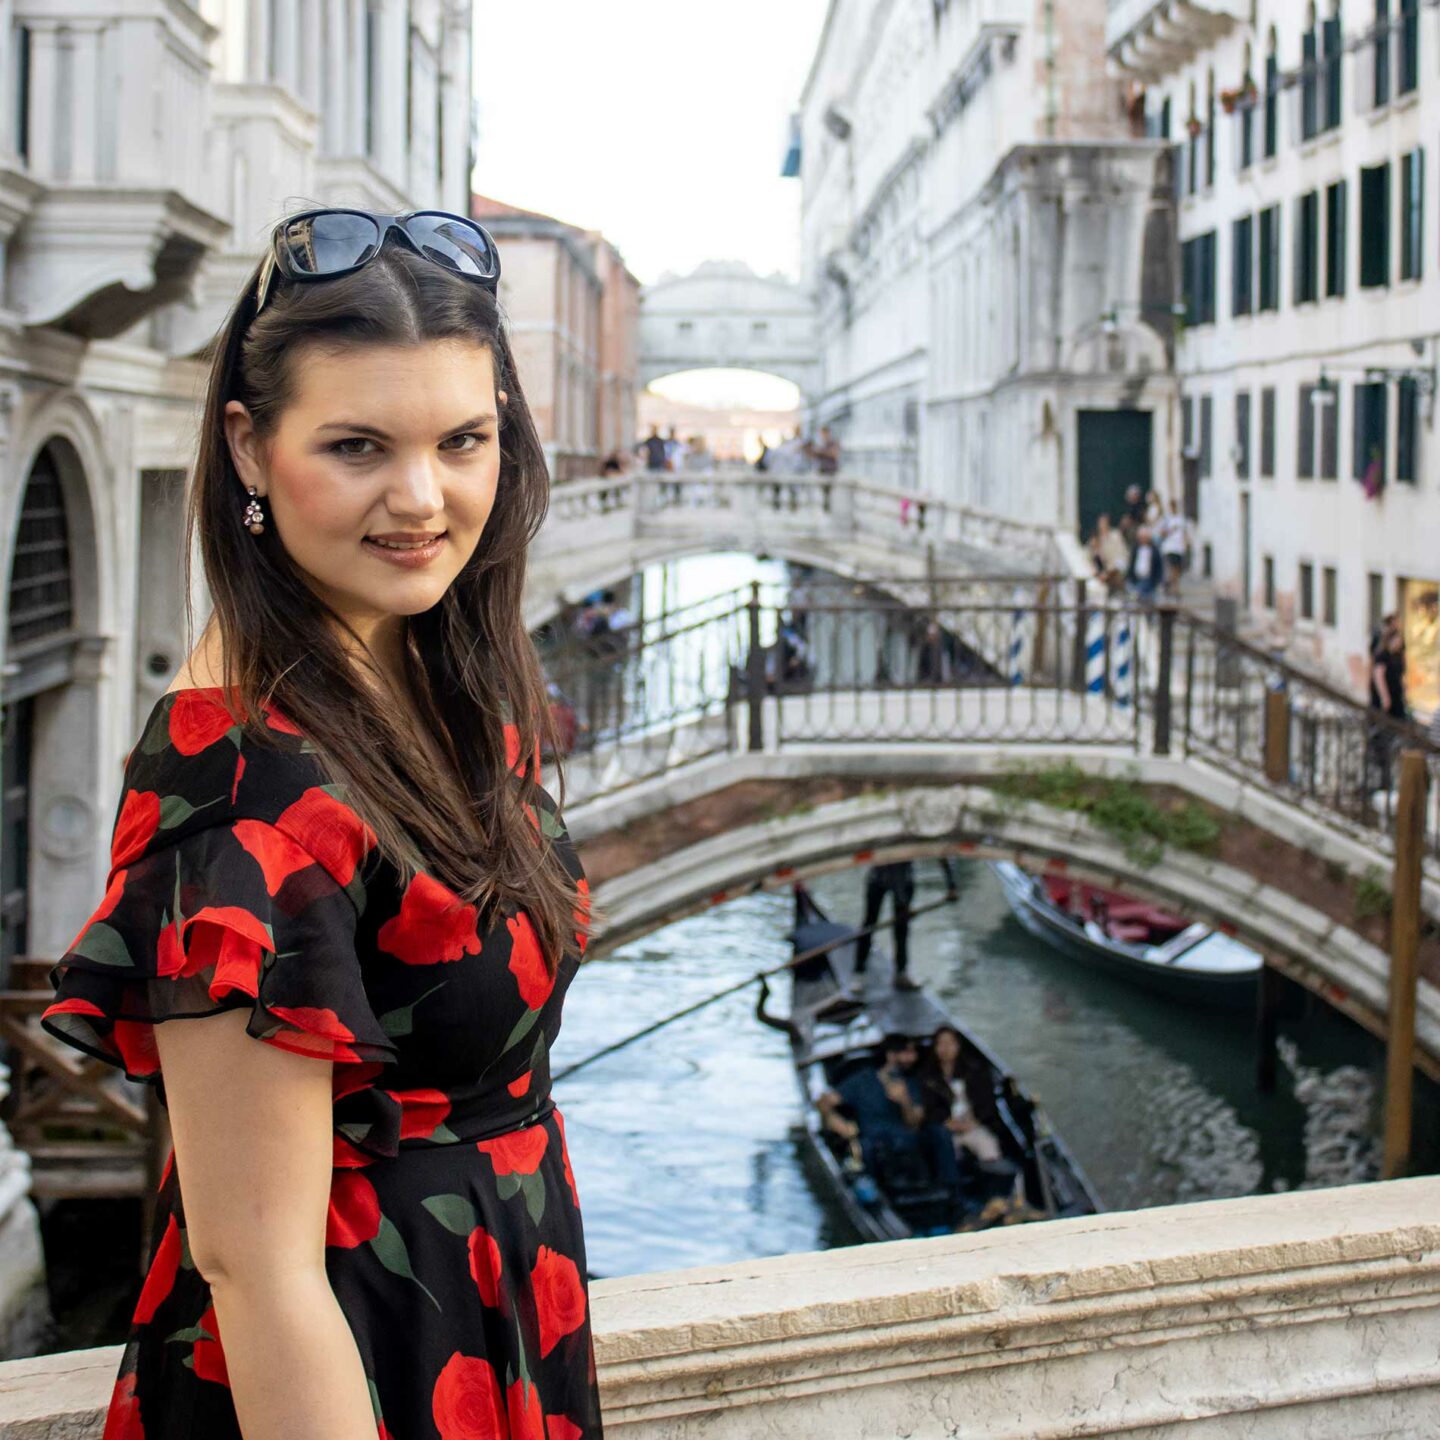 schöner Fotospot mit Blick auf die kleine Kanäle und Brücken in Venedig